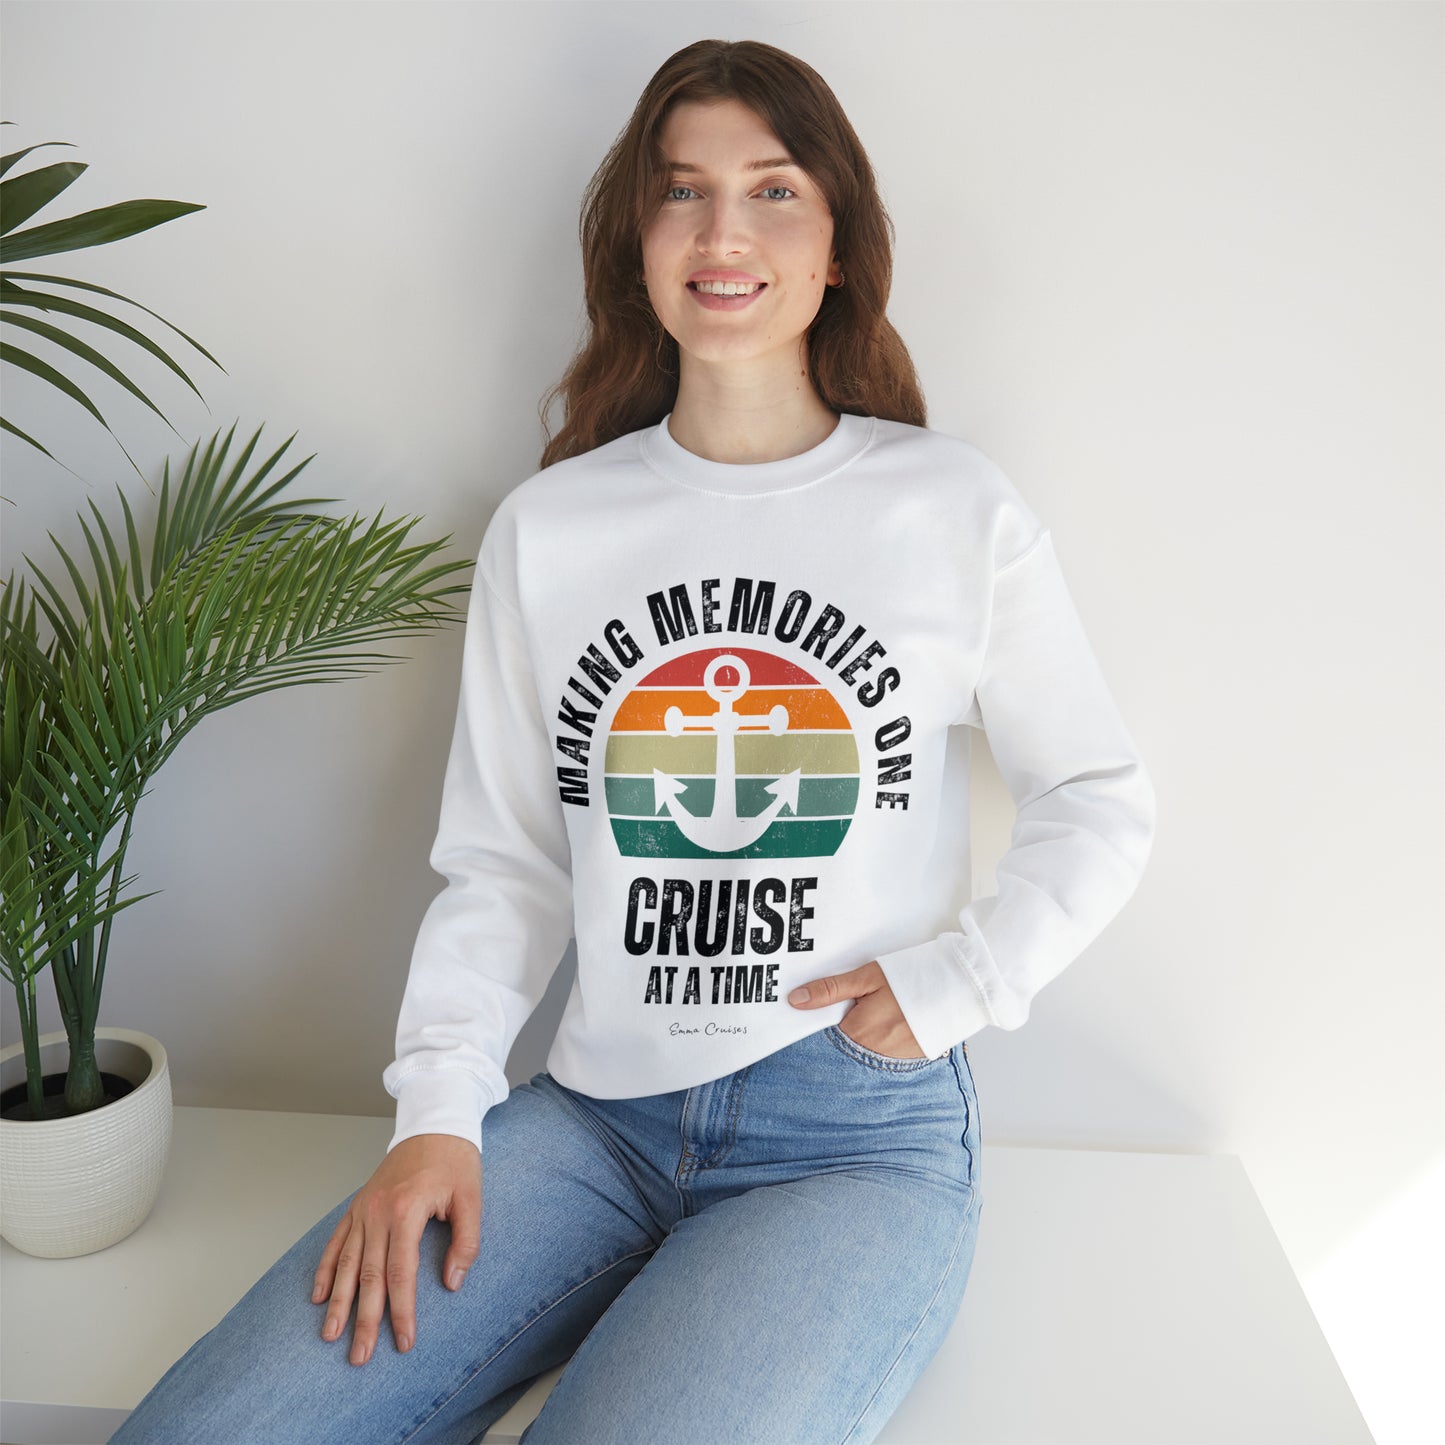 Making Memories One Cruise at a Time - UNISEX Crewneck Sweatshirt (UK)